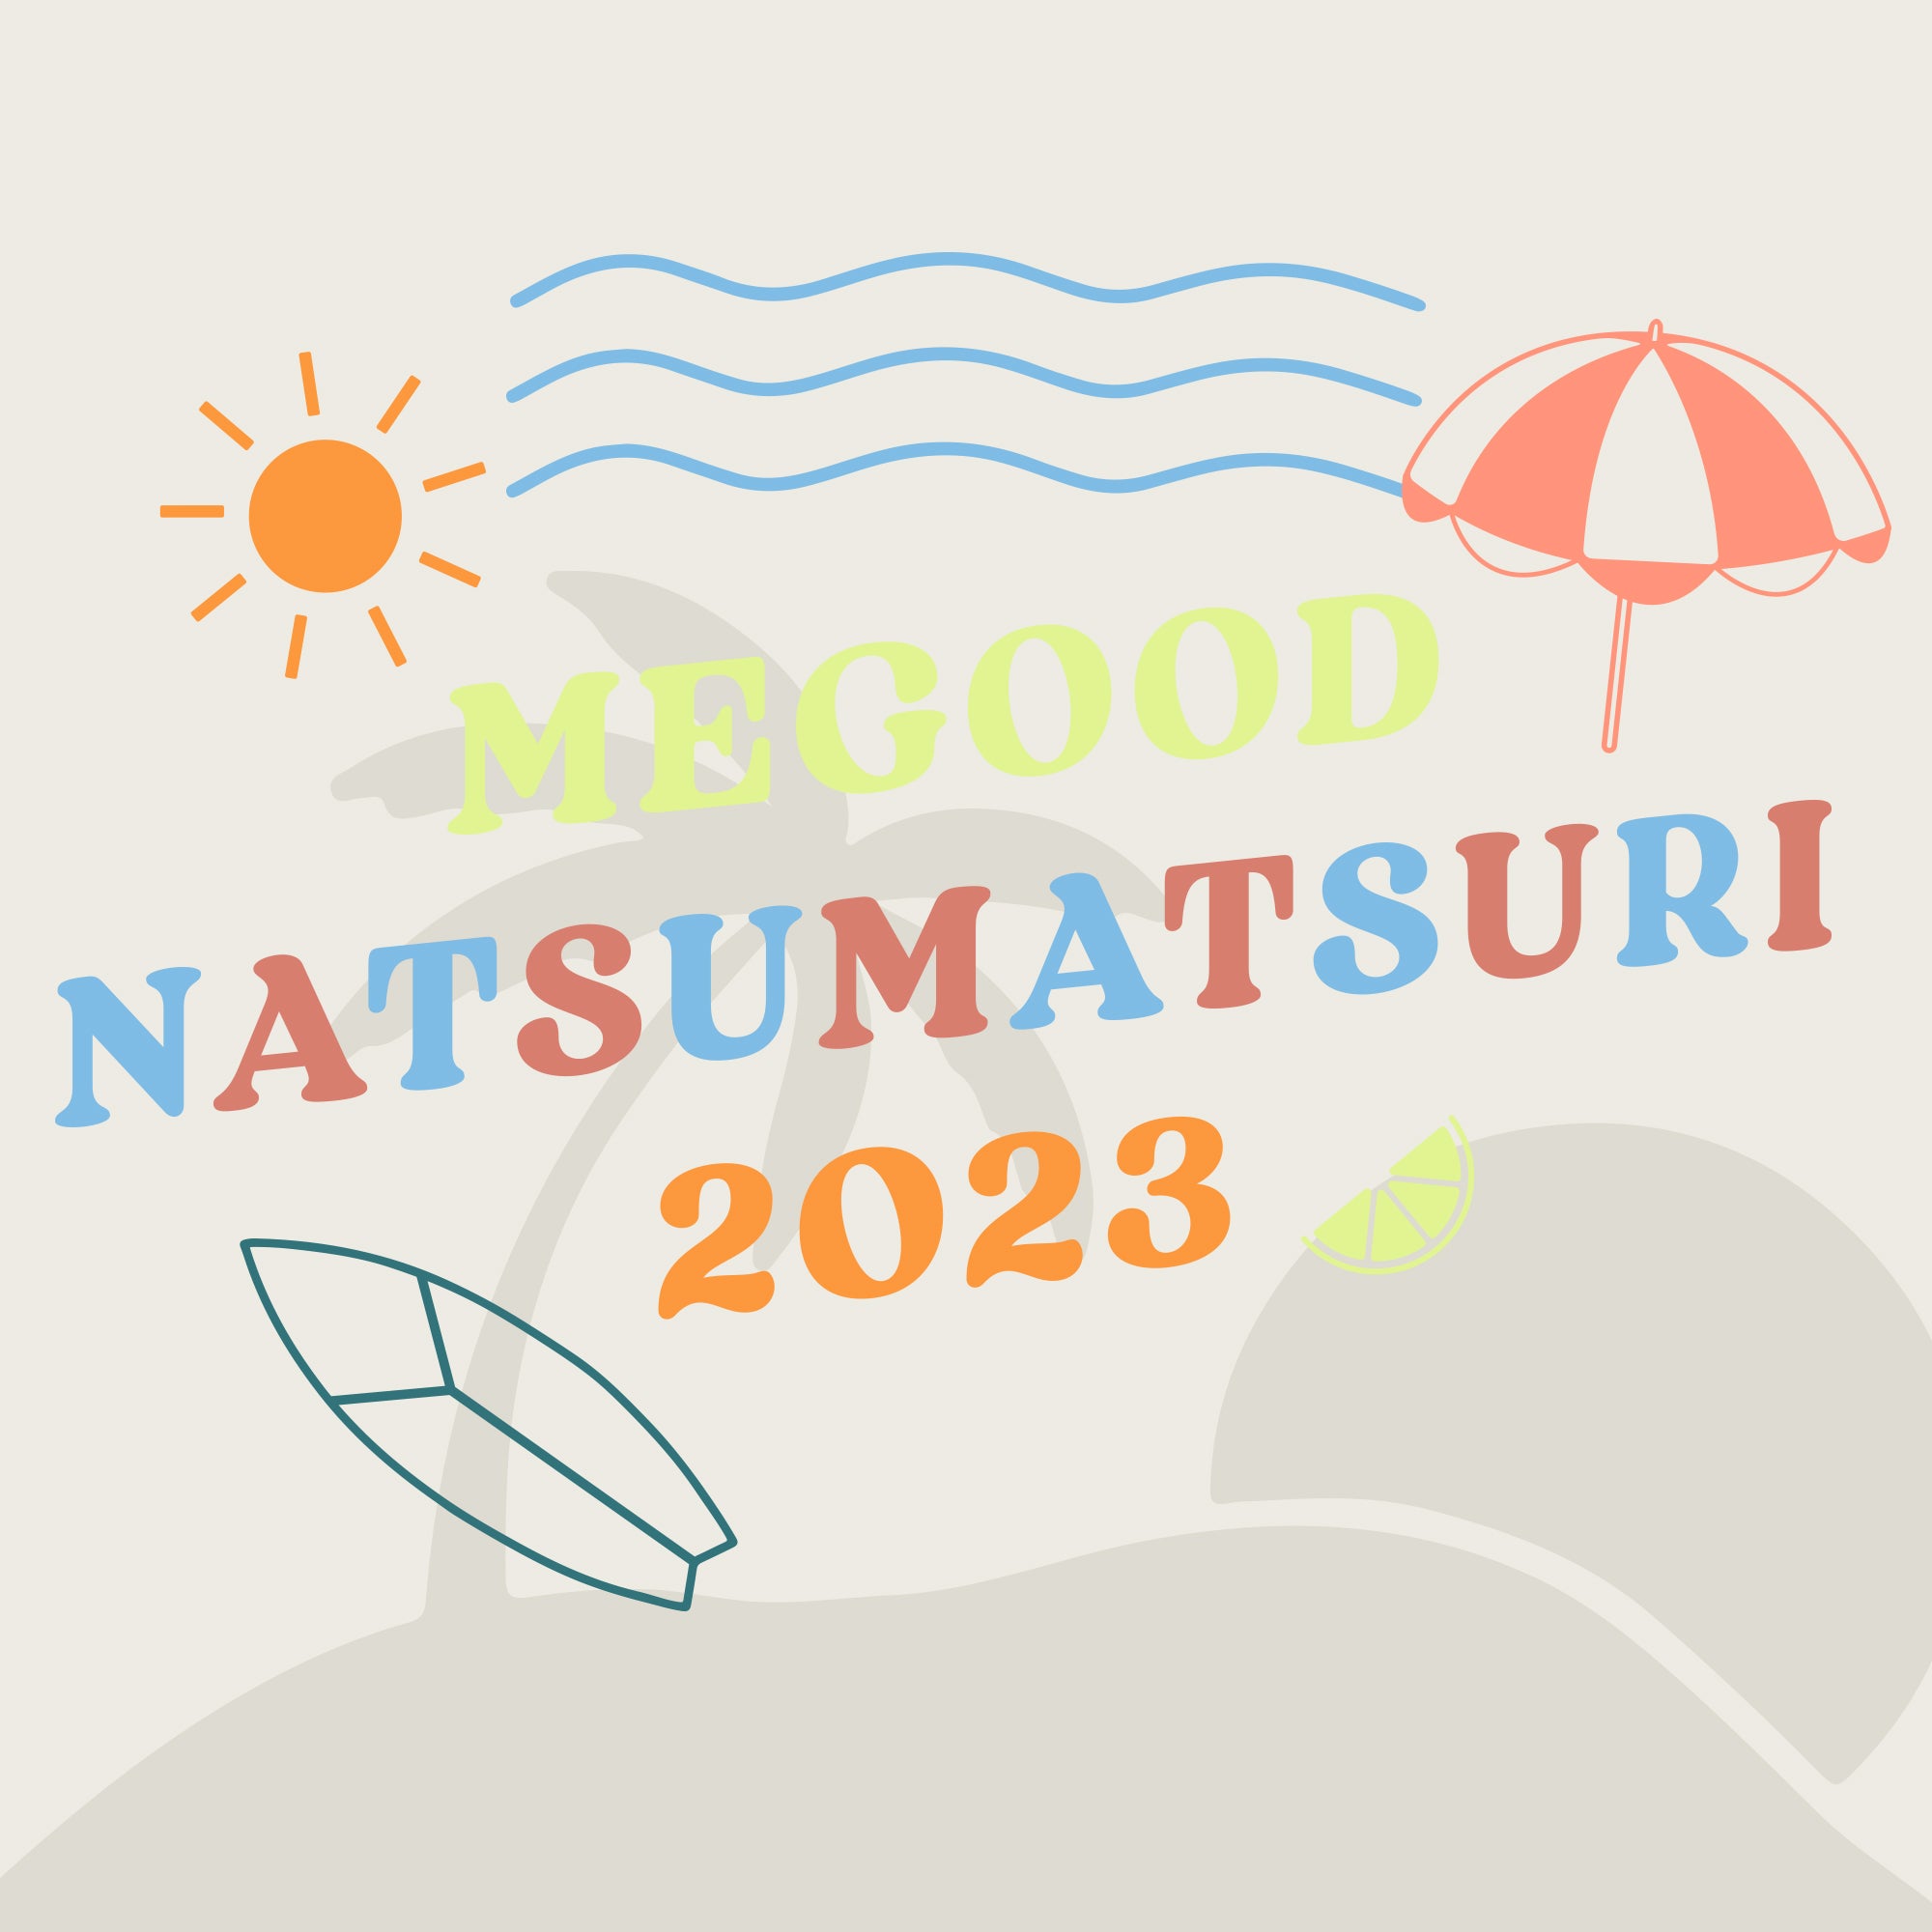 🏮MEGOOD NATSUMATSURI 2023 告知🏮